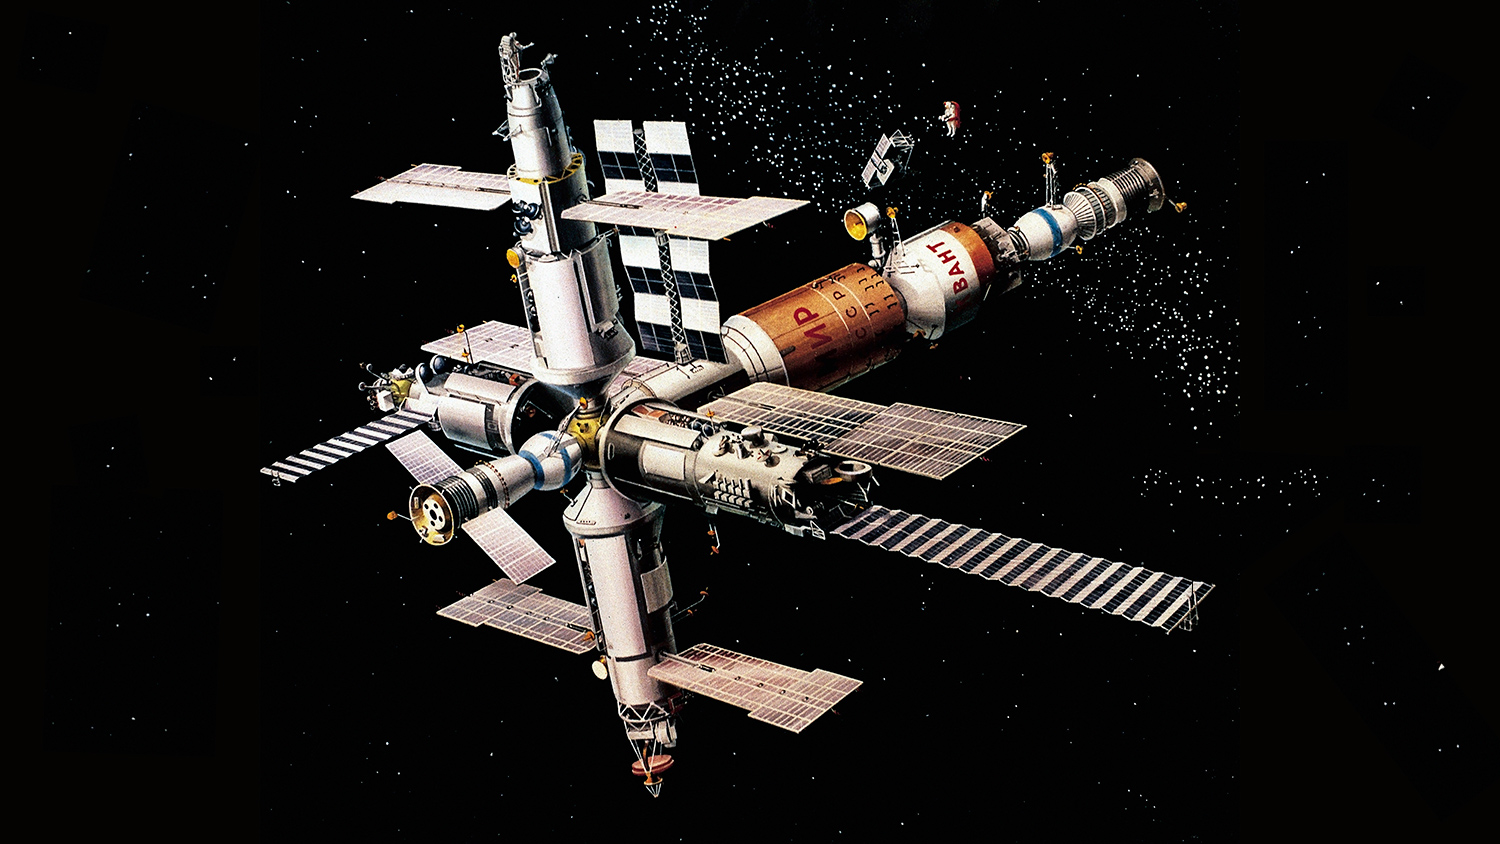 Сколько лет станция мир пребывала на орбите. Орбитальная станция мир 1986. Запуск станции мир в 1986 году. Российская орбитальная станция “мир”. Запуск орбитальной станции мир.